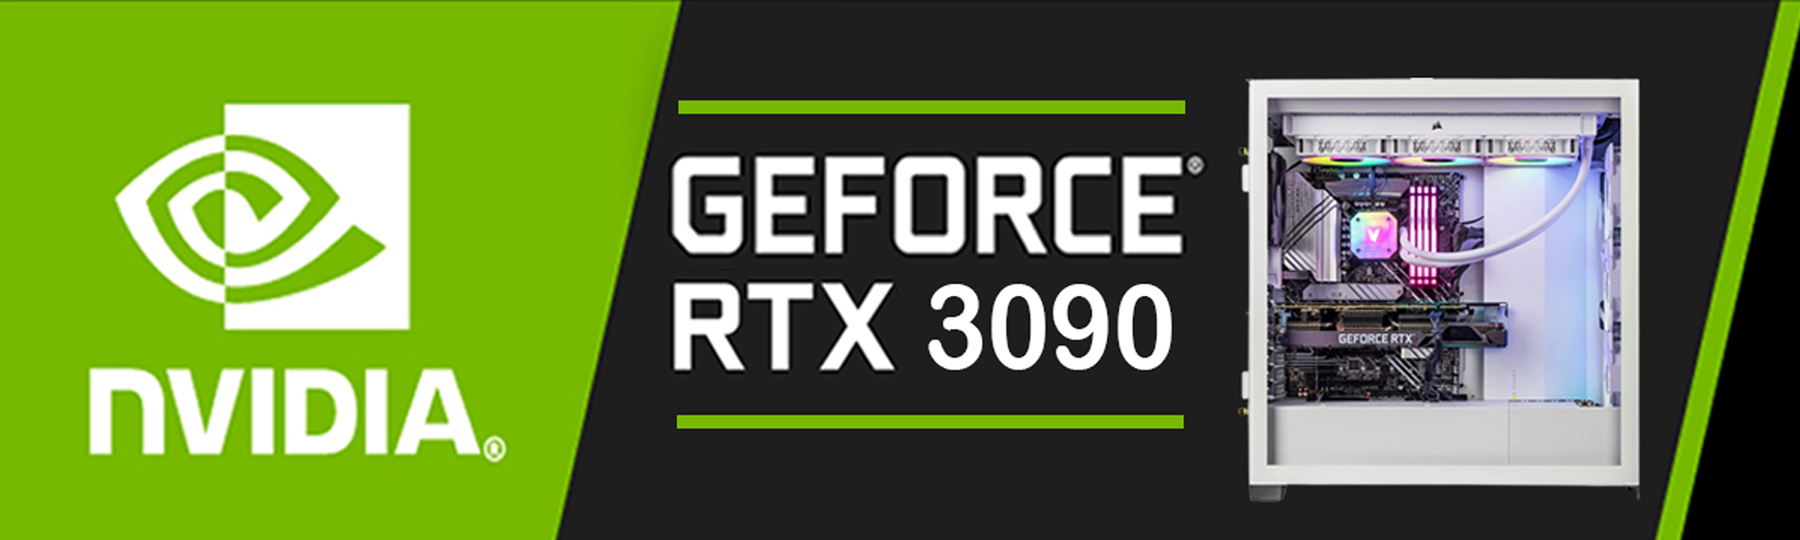 GeForce RTX 3090, 24GB GDDR6X PCIe 4.0, DirectX 12, VR Ready, G-SYNC